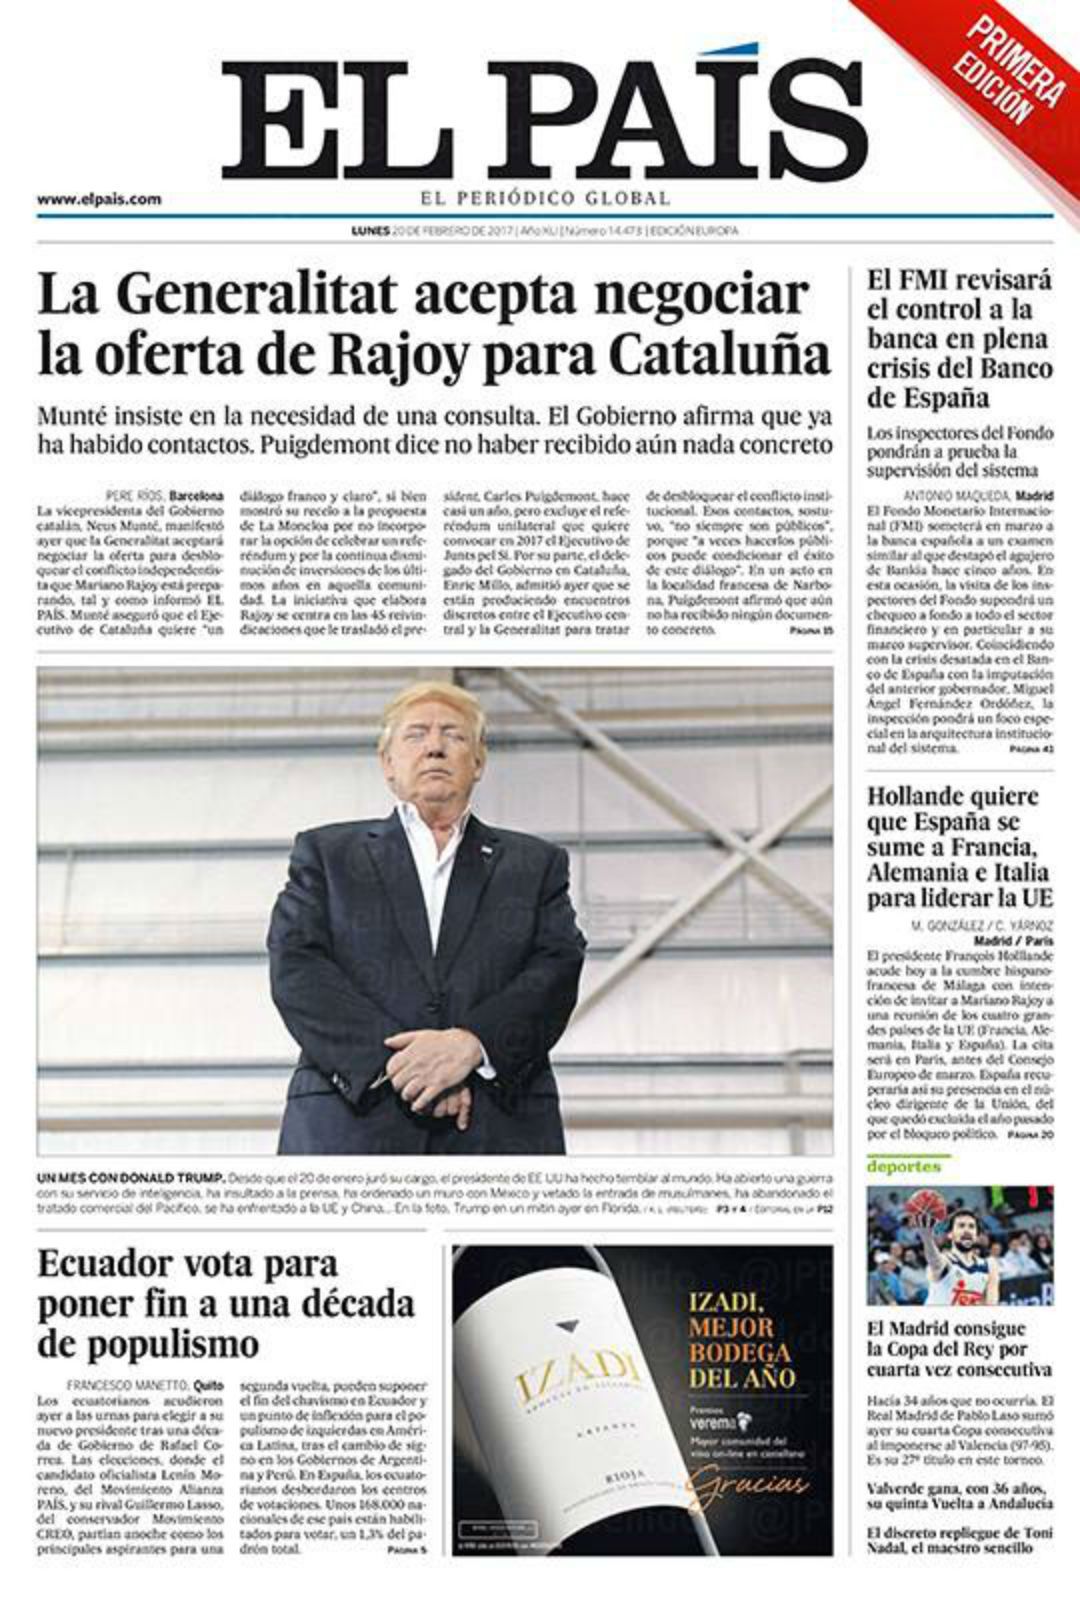 El 'no' de Puigdemont que 'El País' transforma en un 'sí'